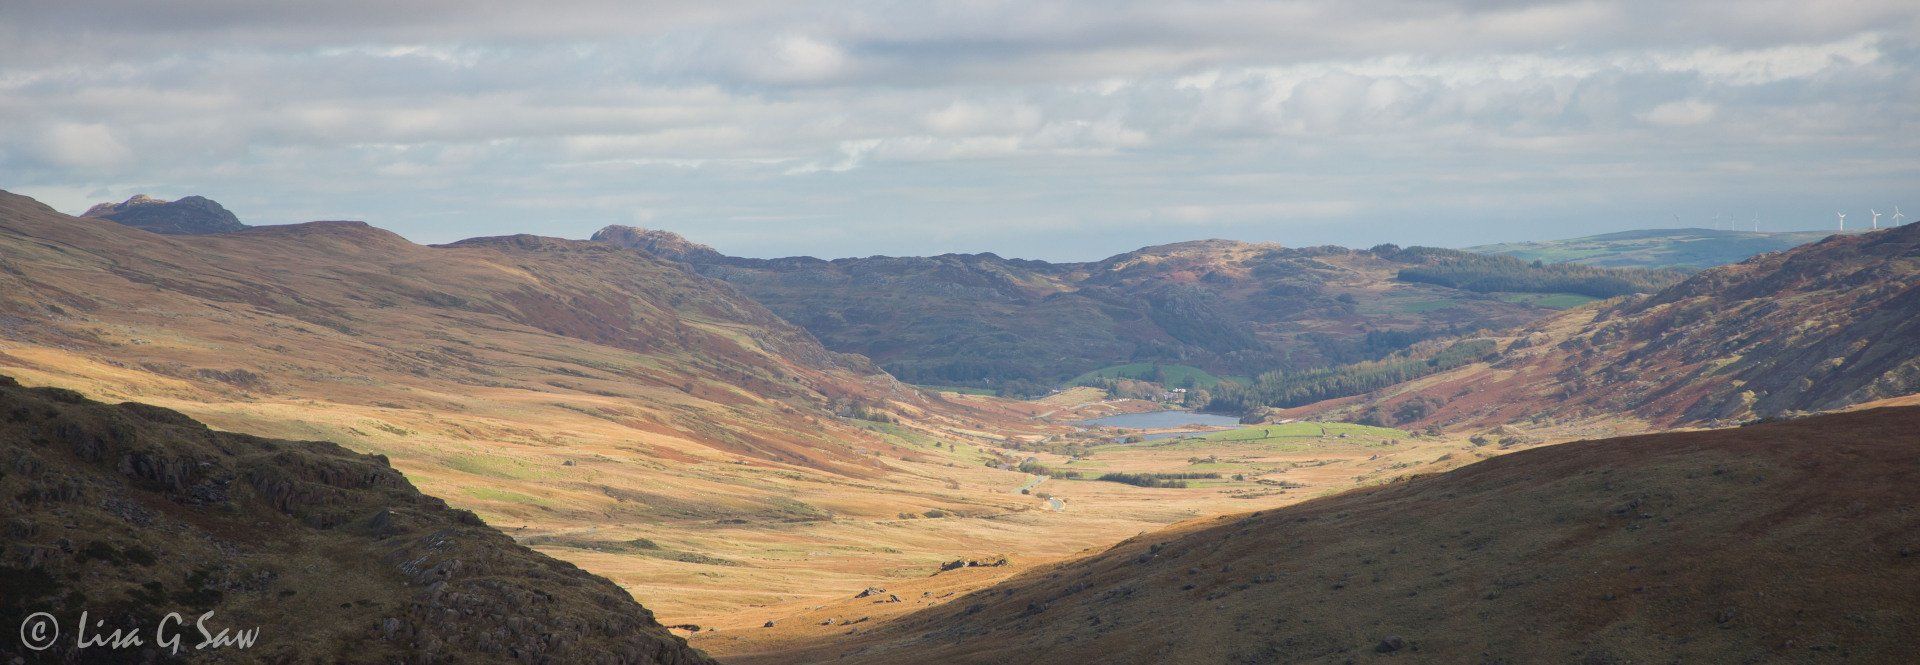 Valley looking towards Capel Curig in Snowdonia National Park